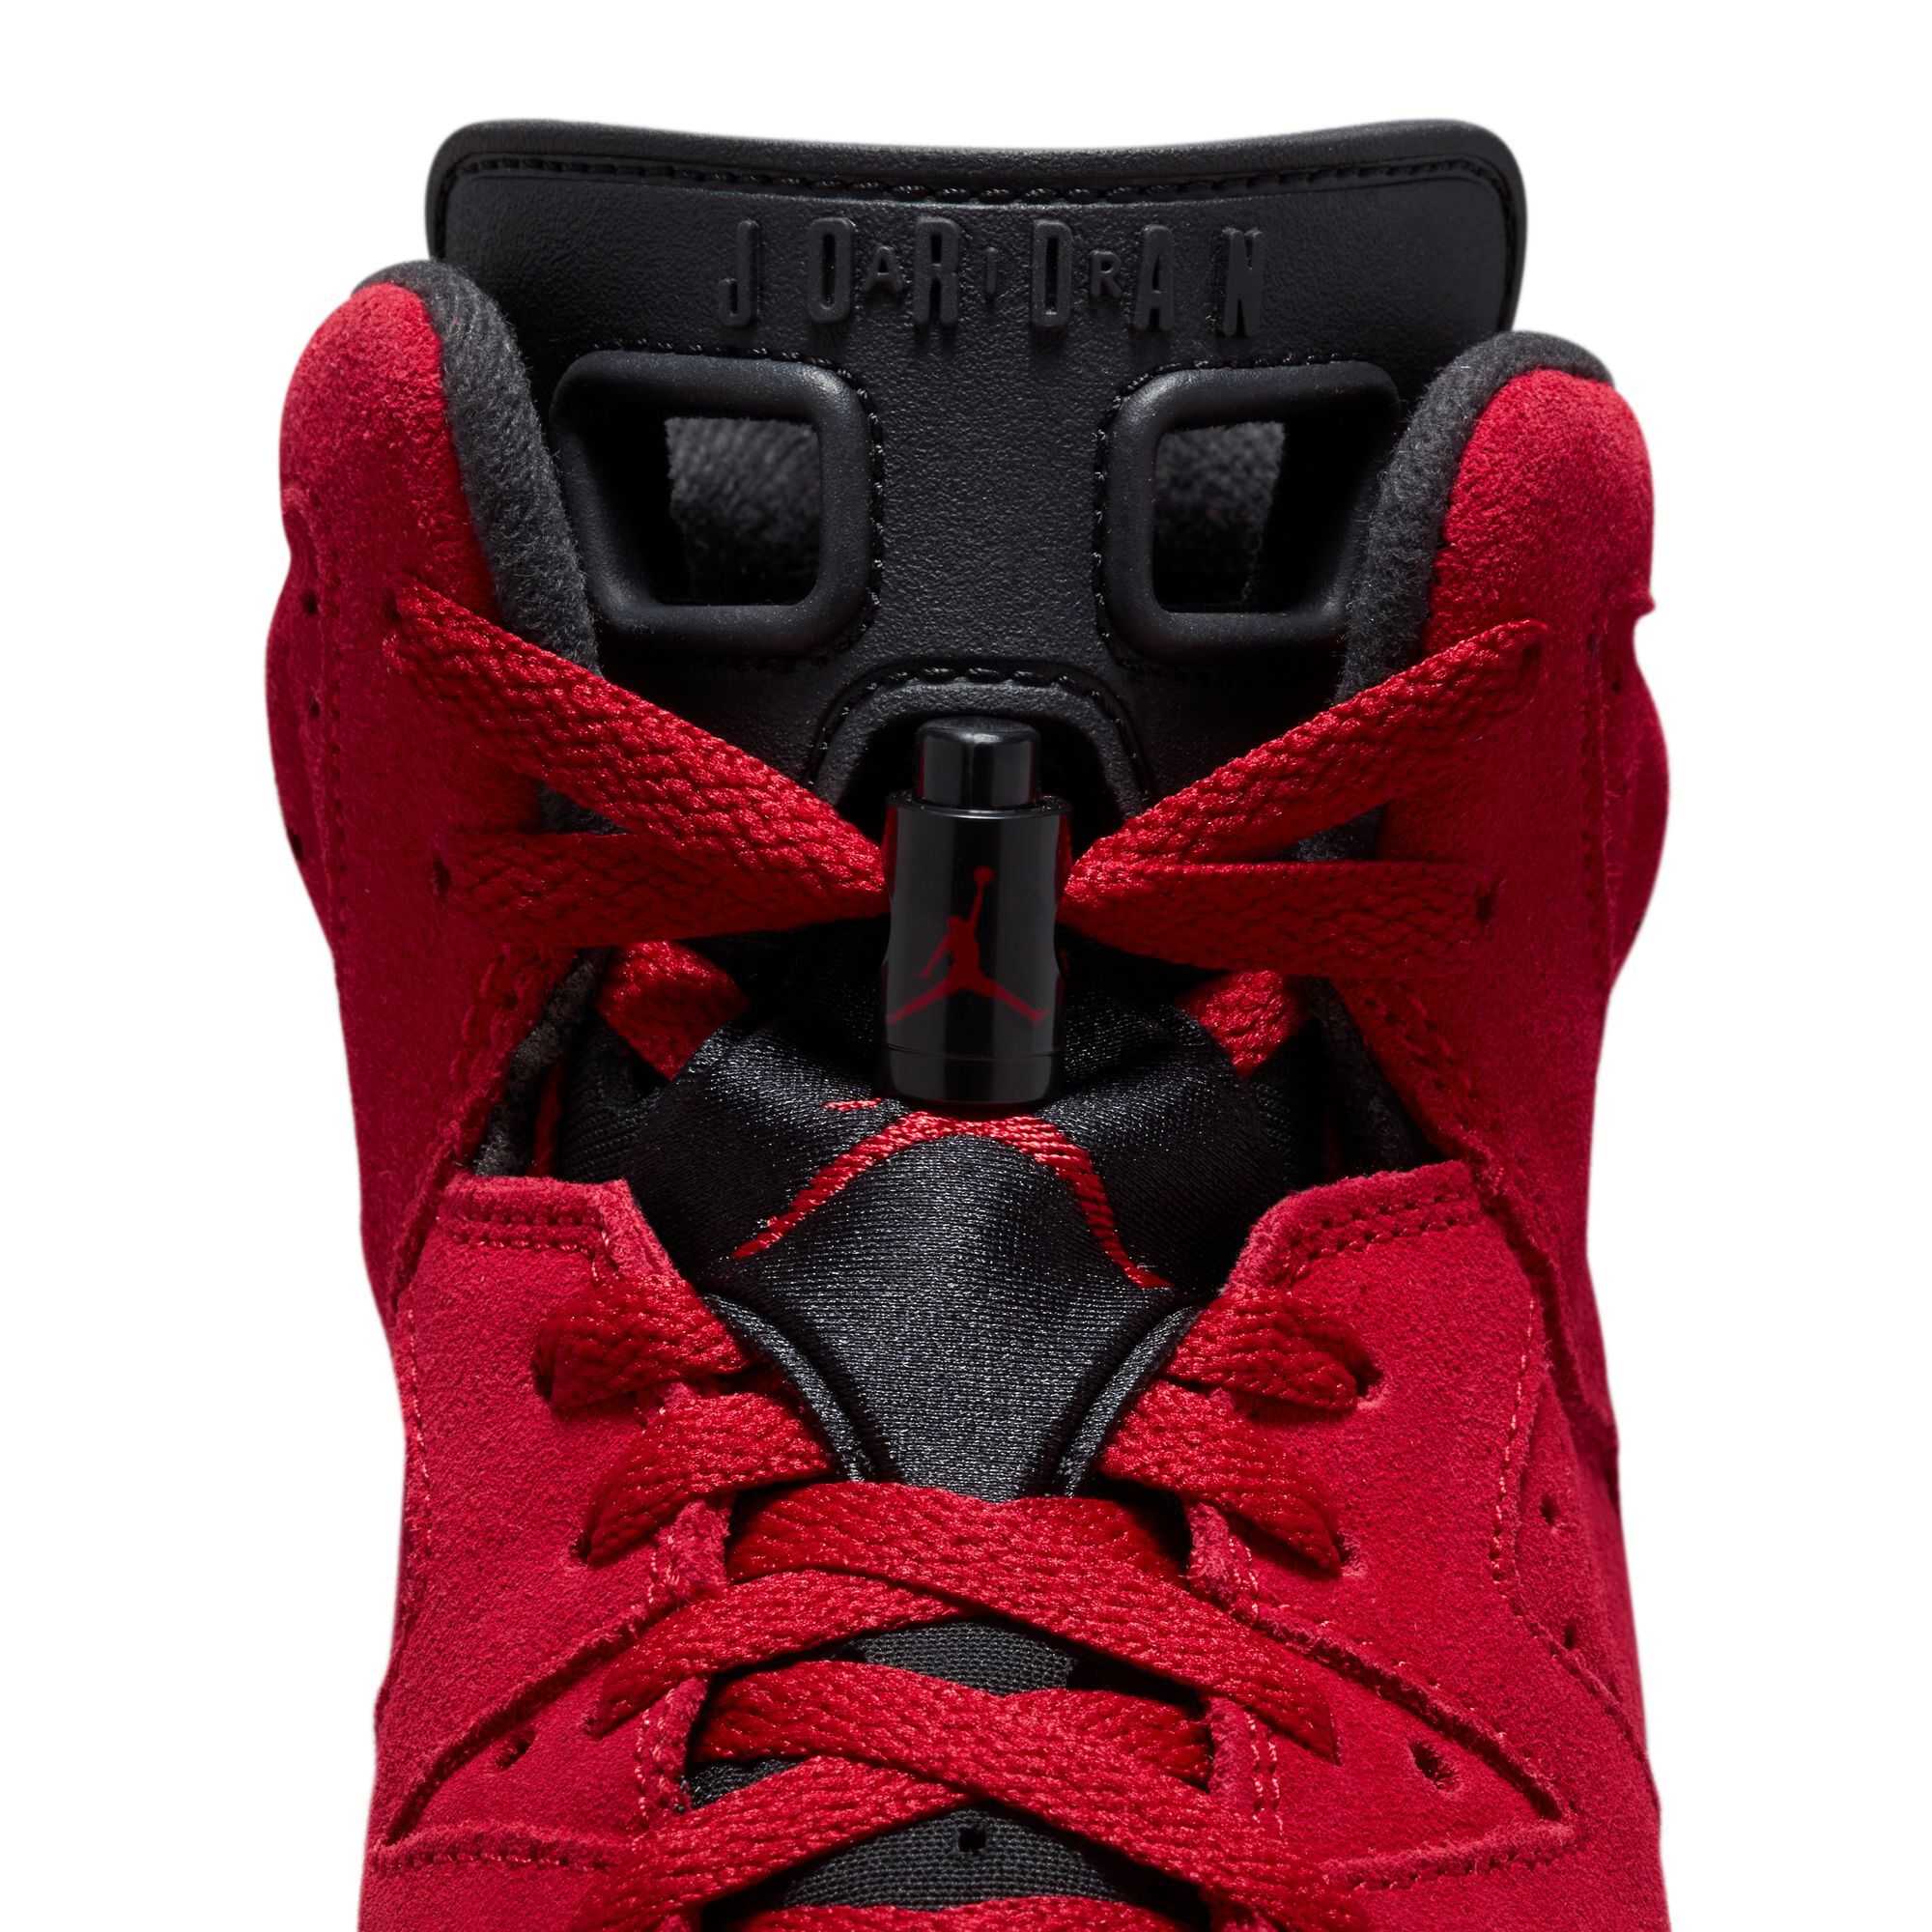 Air Jordan 6 Retro, Rojo Varsity/Negro, hi-res